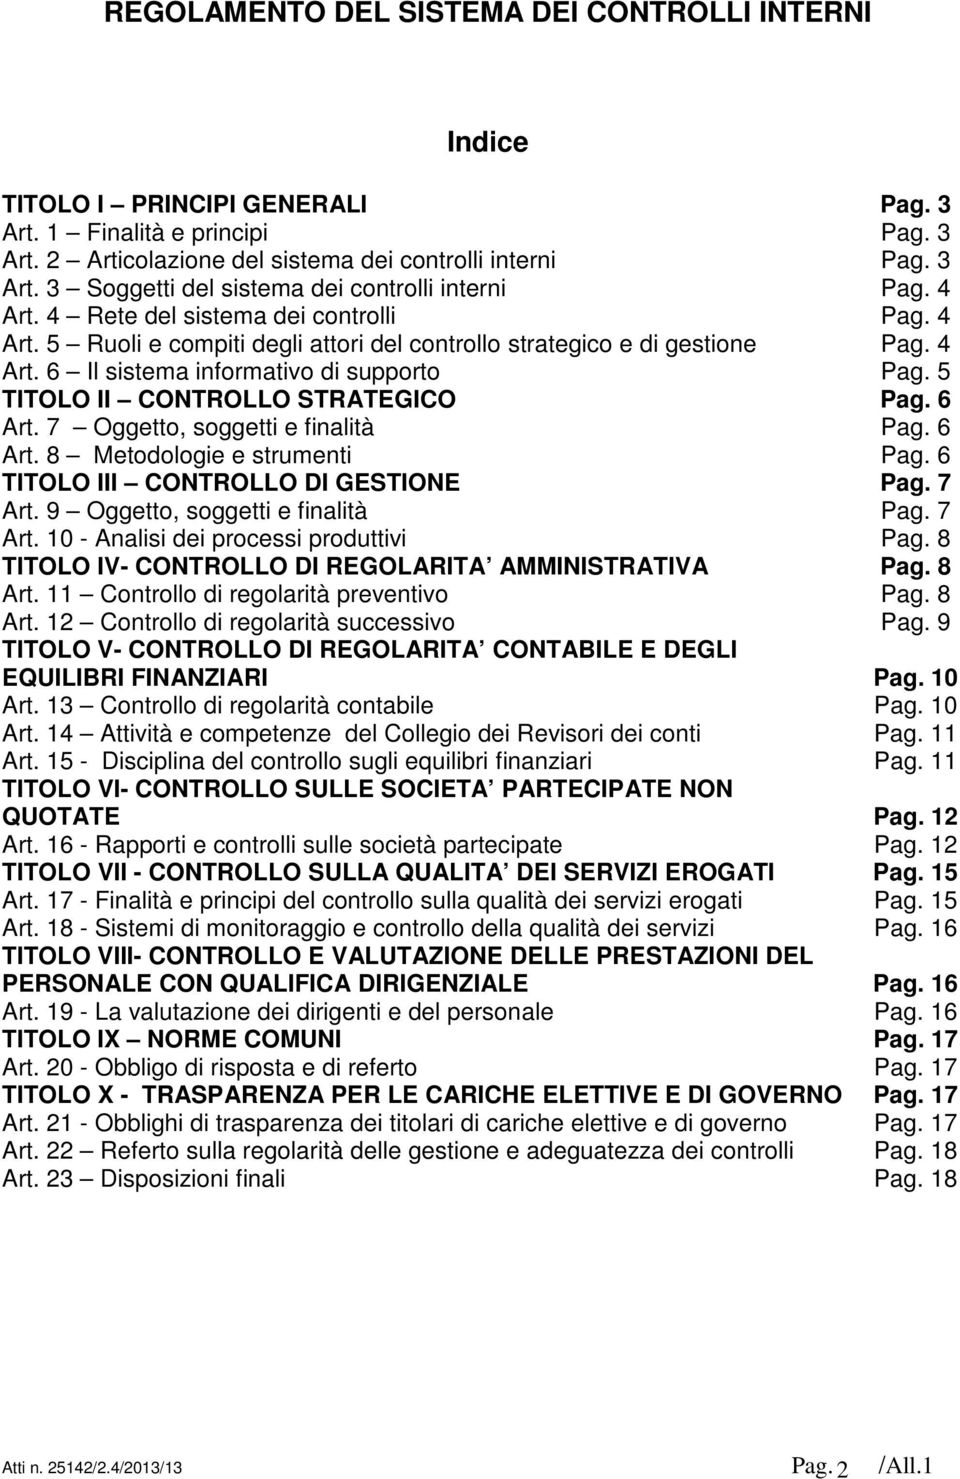 5 TITOLO II CONTROLLO STRATEGICO Pag. 6 Art. 7 Oggetto, soggetti e finalità Pag. 6 Art. 8 Metodologie e strumenti Pag. 6 TITOLO III CONTROLLO DI GESTIONE Pag. 7 Art.